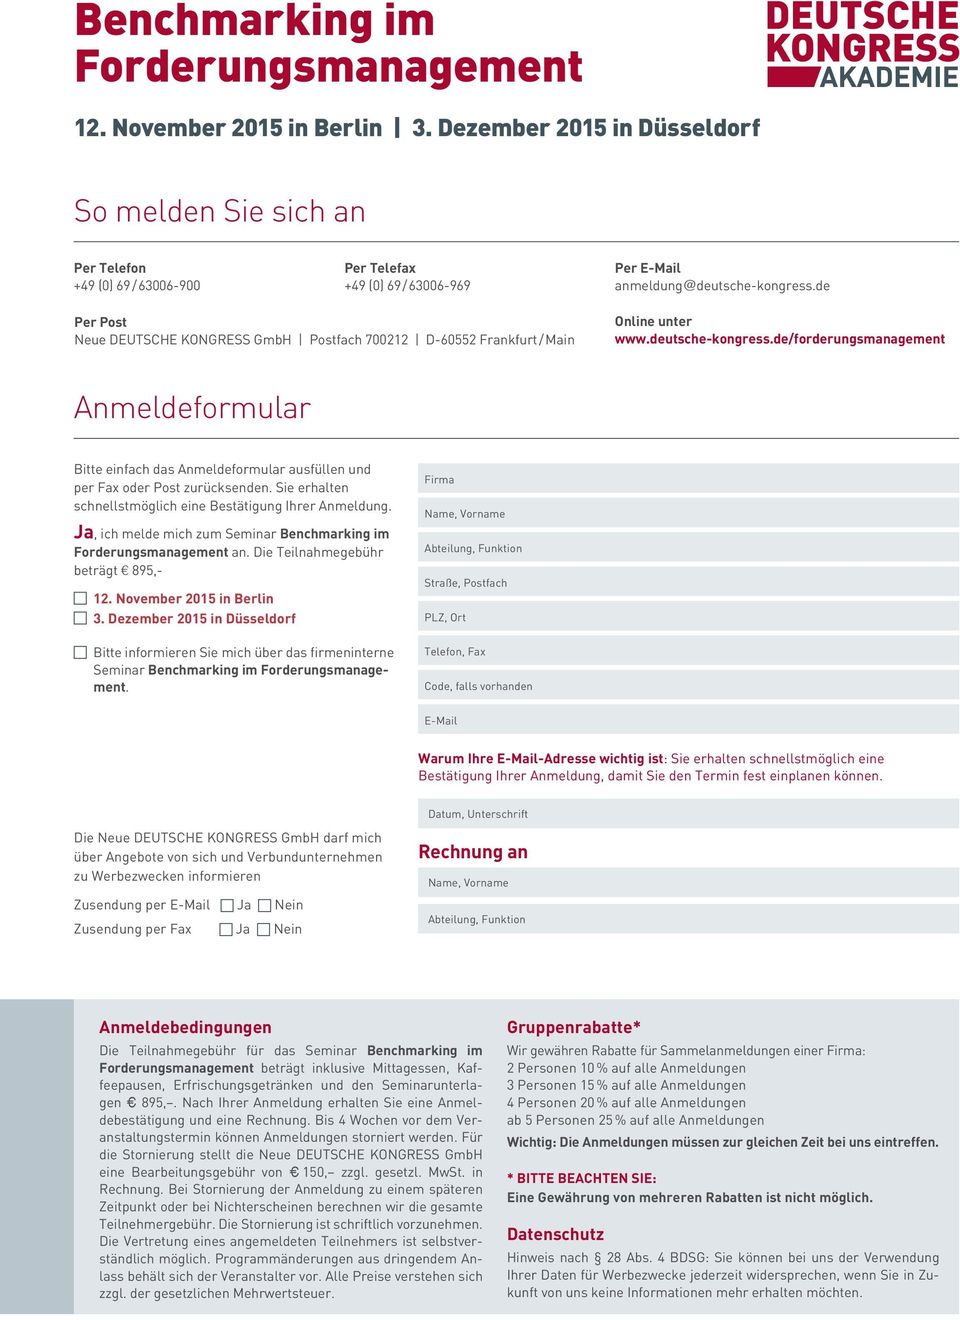 de Per Post Neue DEUTSCHE KONGRESS GmbH Postfach 700212 D-60552 Frankfurt / Main Online unter Anmeldeformular Bitte einfach das Anmeldeformular ausfüllen und per Fax oder Post zurücksenden.